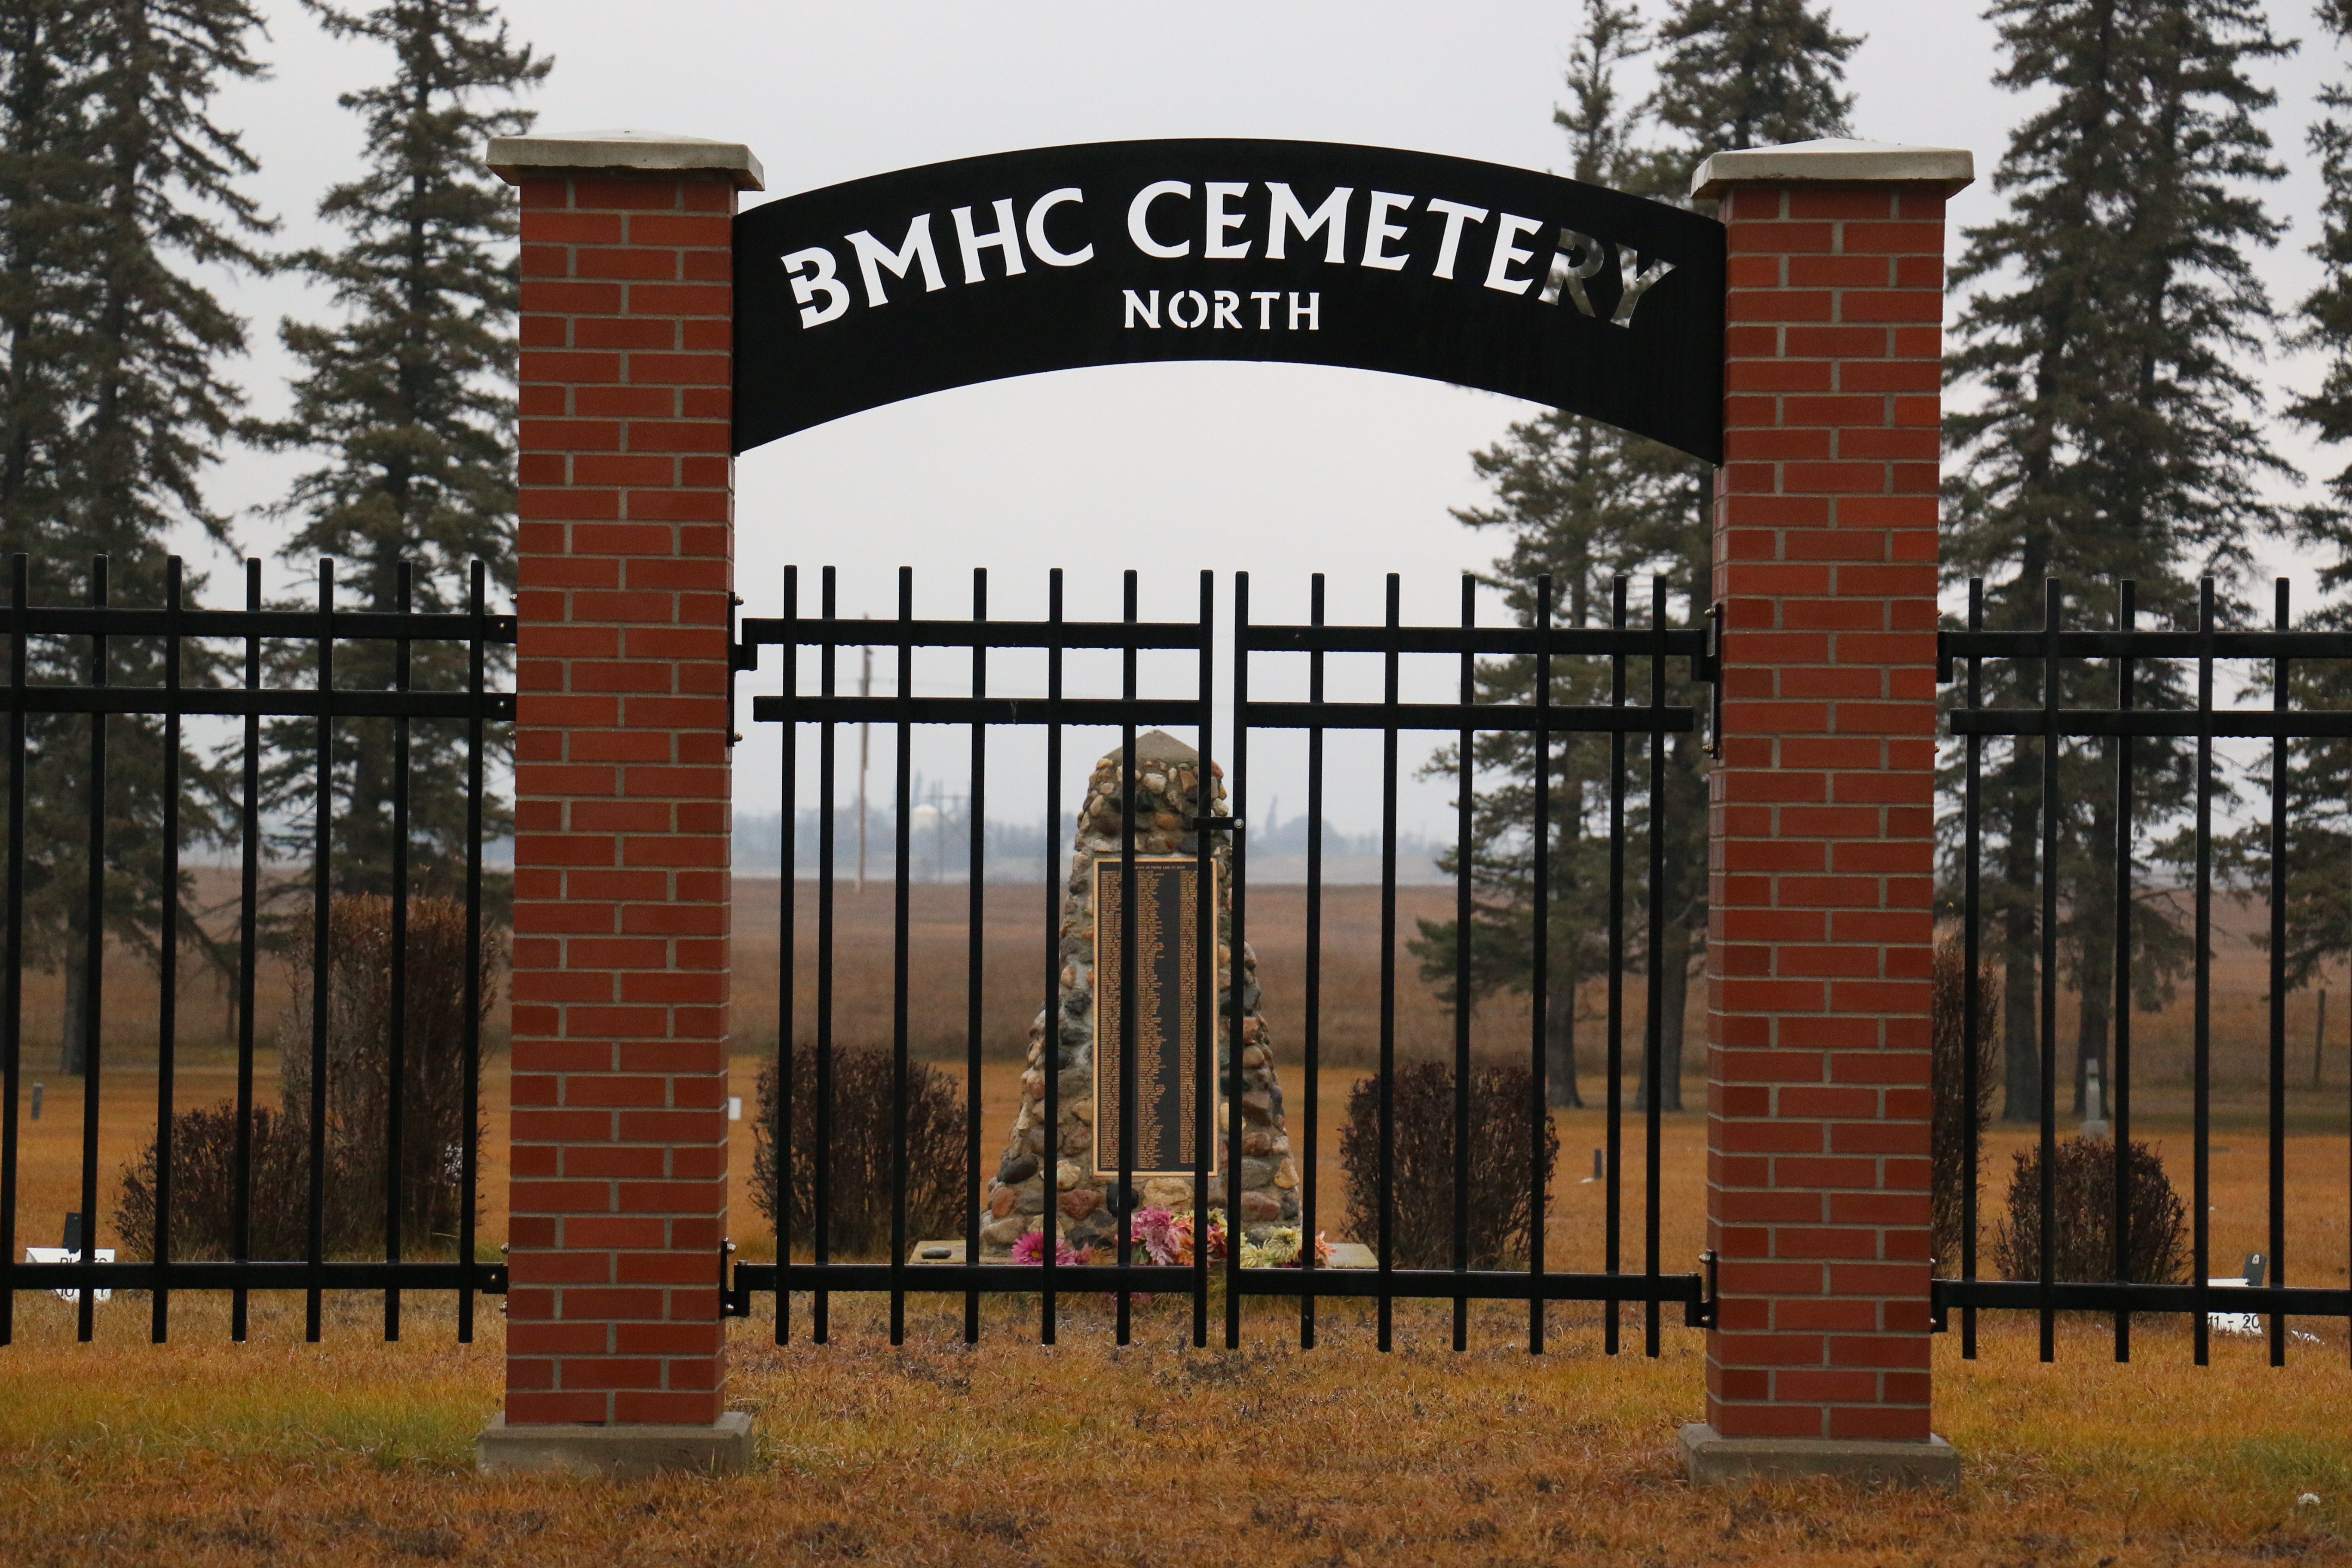 Brandon Mental Health Centre Cemetery North